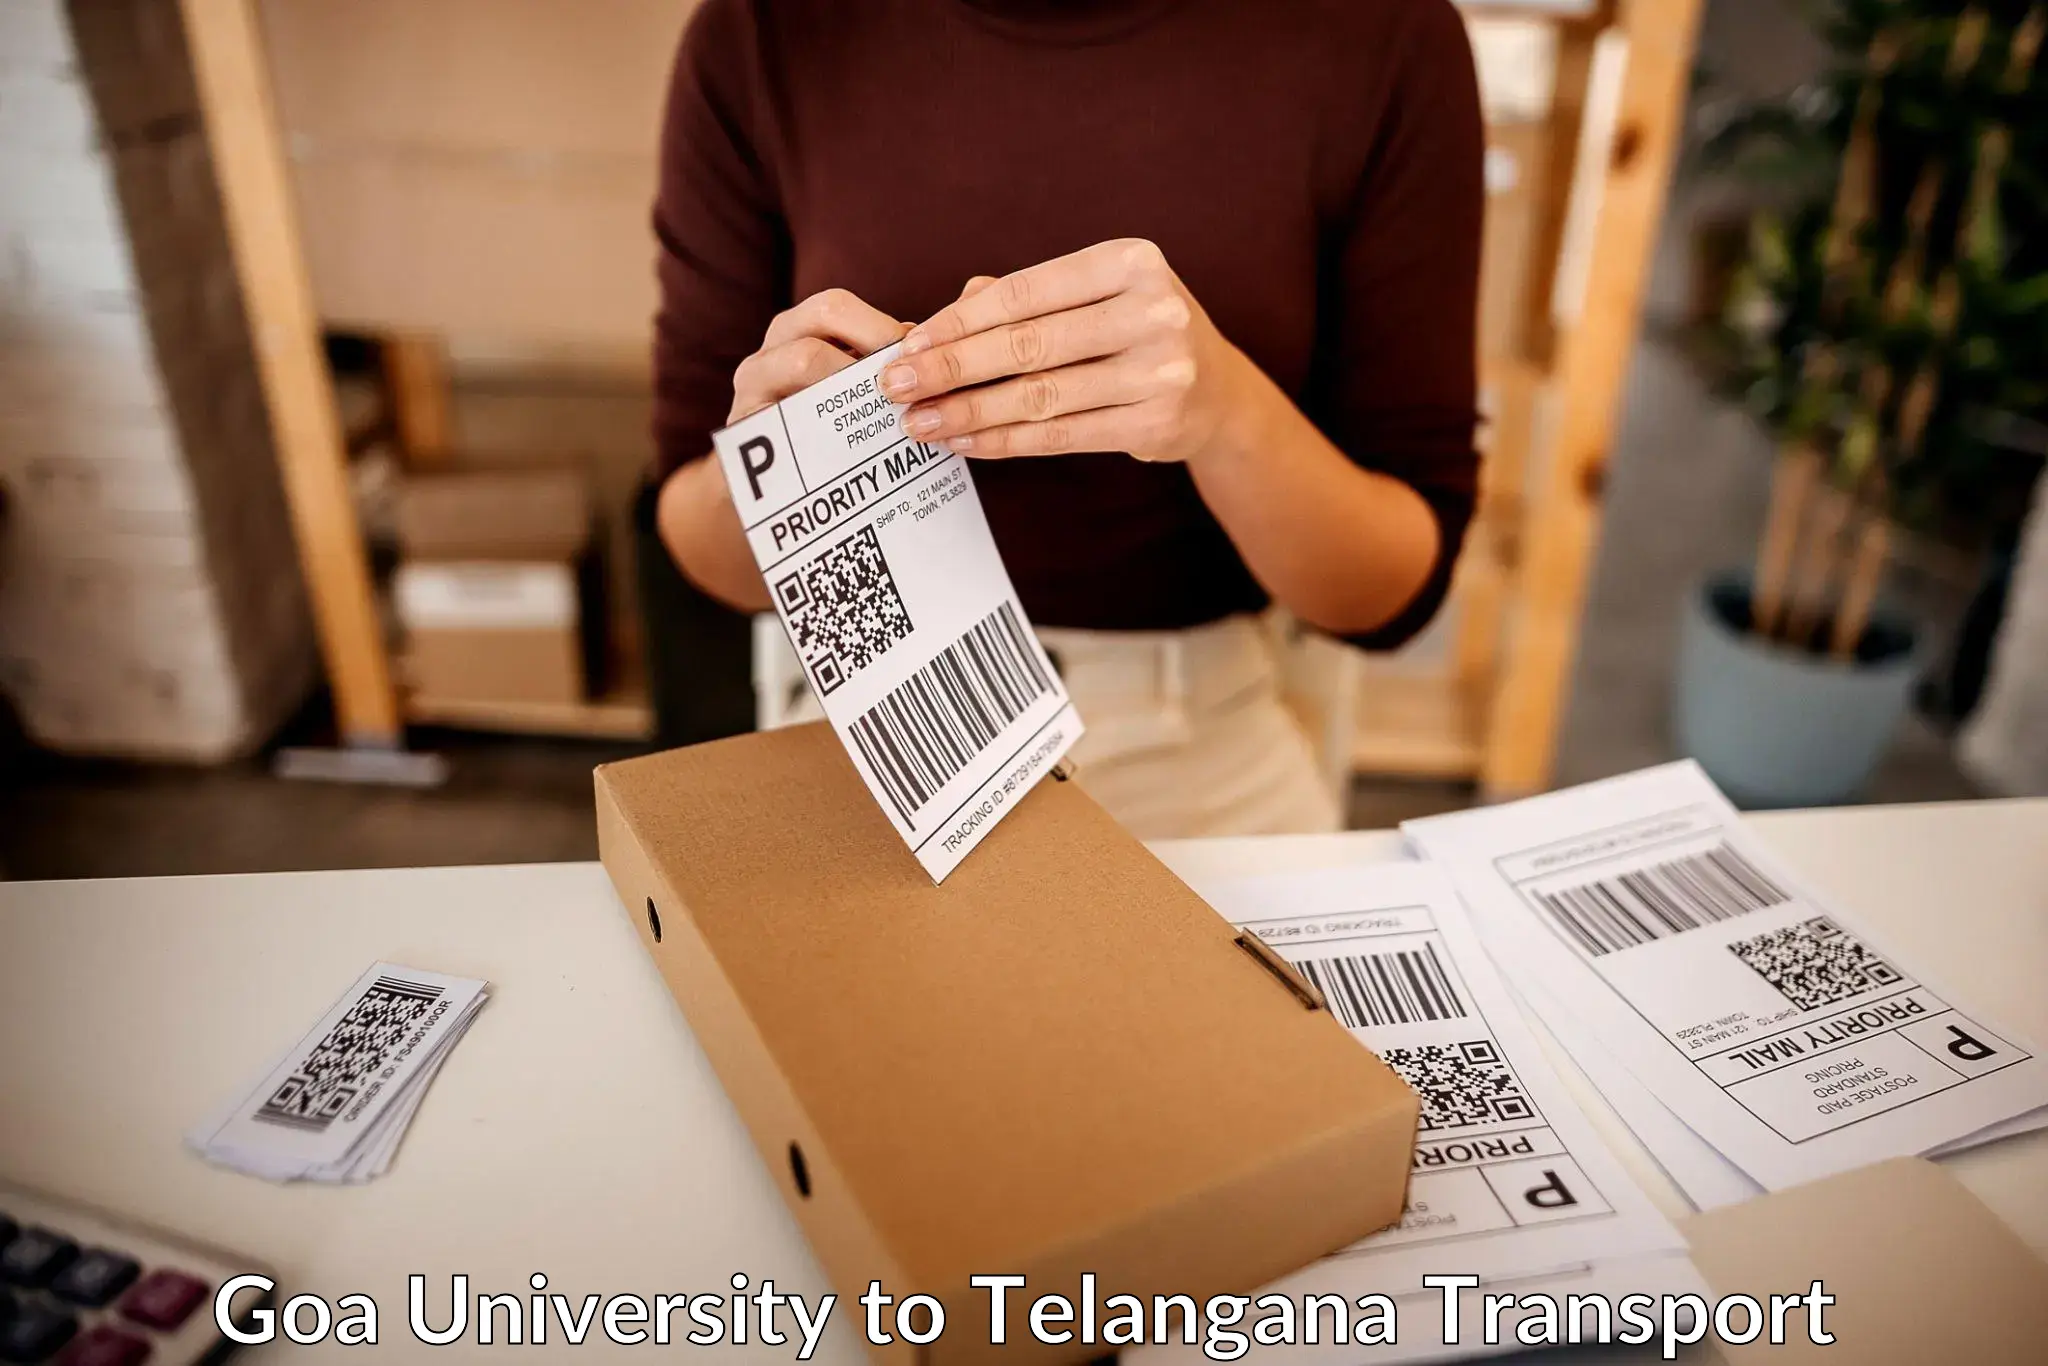 Daily parcel service transport Goa University to Siddipet